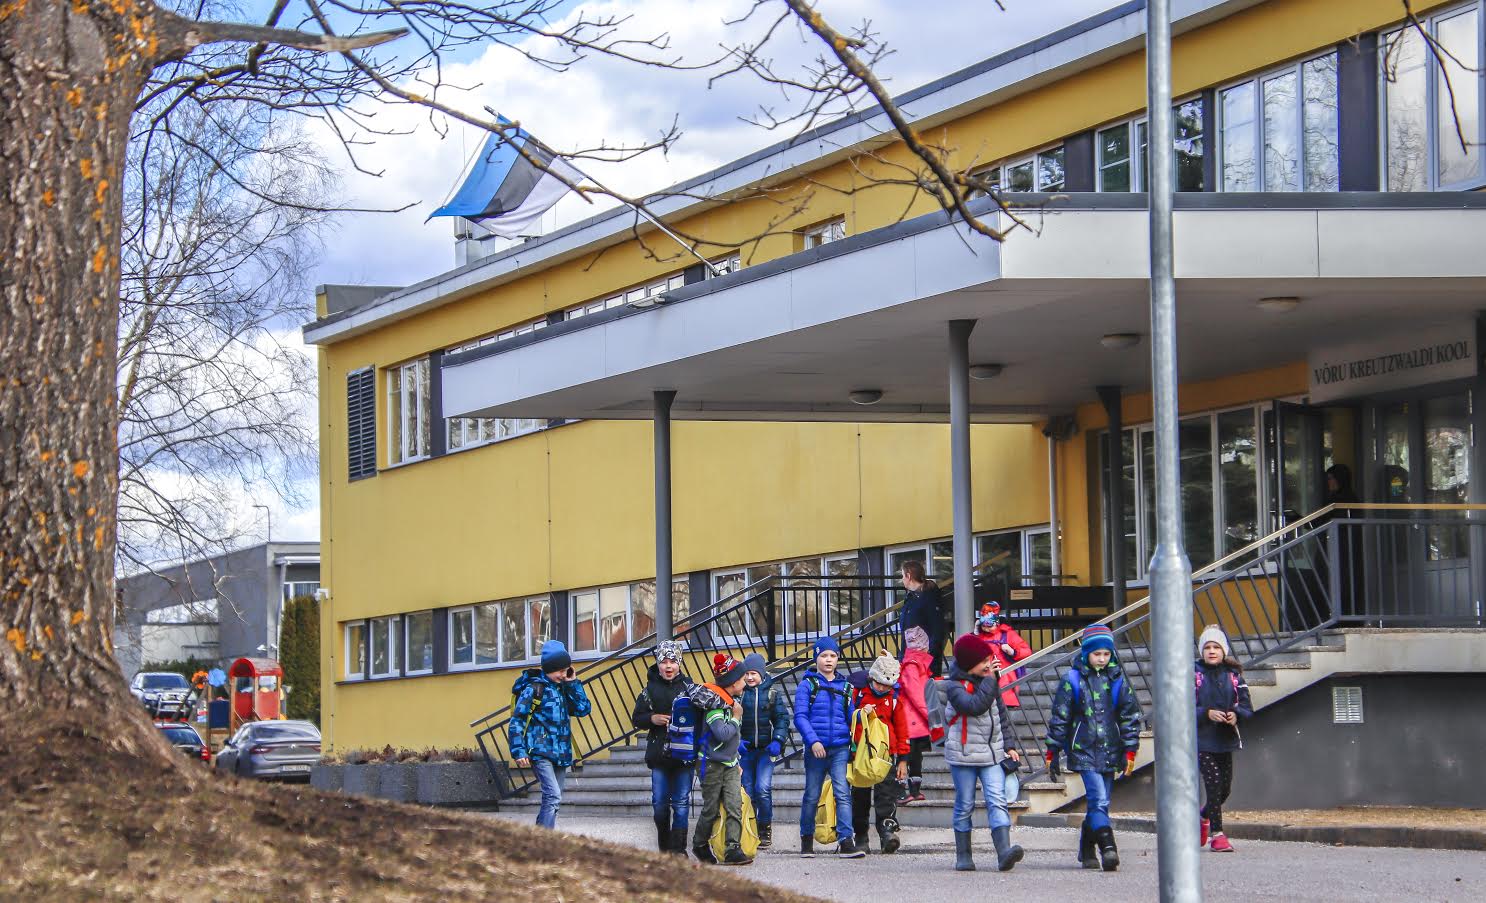 Võru Kreutzwaldi kool liitus eTwinningu projektiga 2016. aasta oktoobris. Foto: AIGAR NAGEL